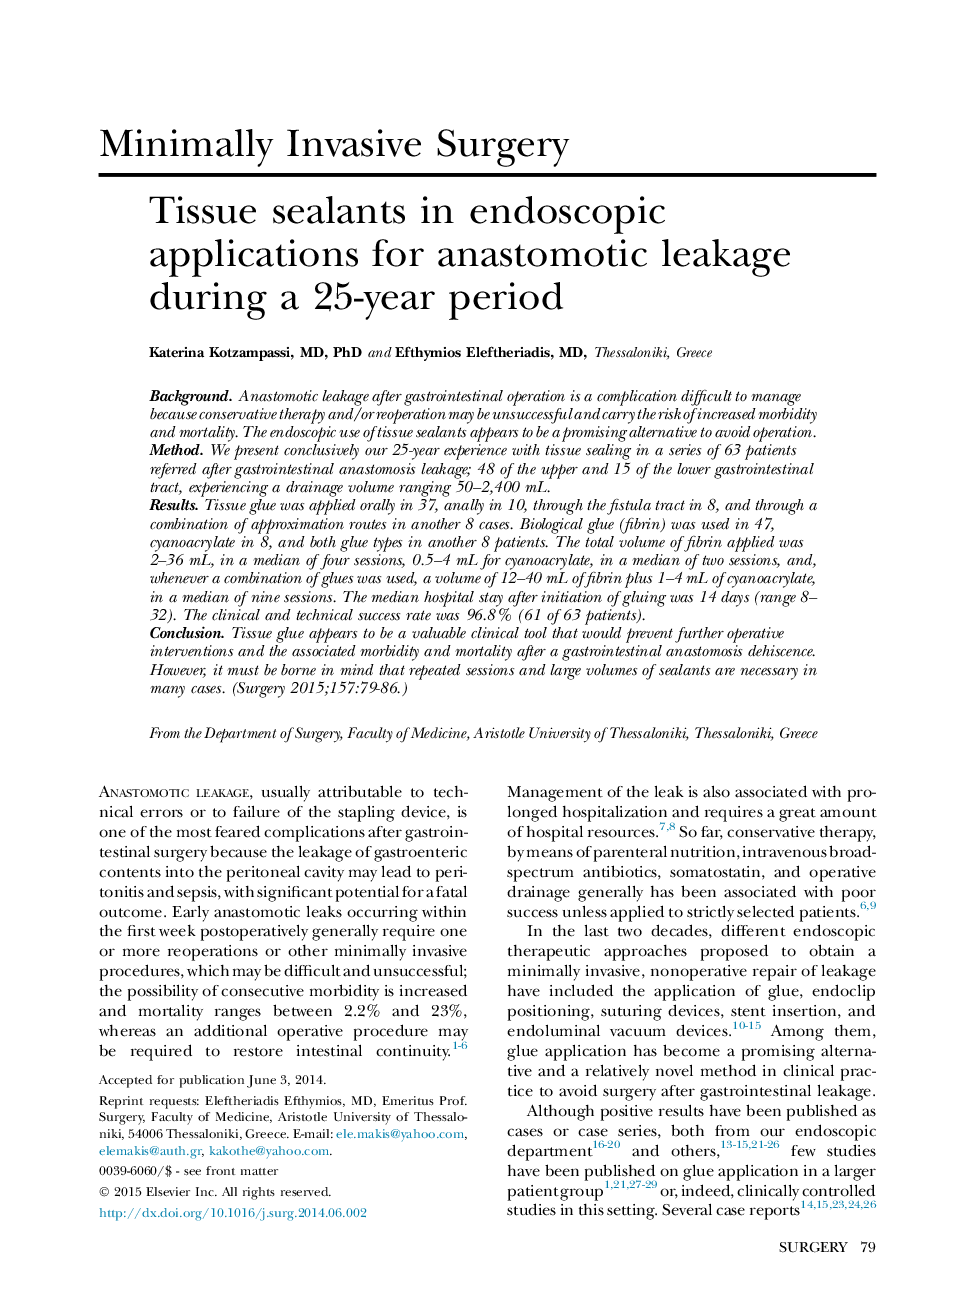 سیلانت های بافت در برنامه های آندوسکوپی برای نشت انستوموتیک طی یک دوره 25 ساله 